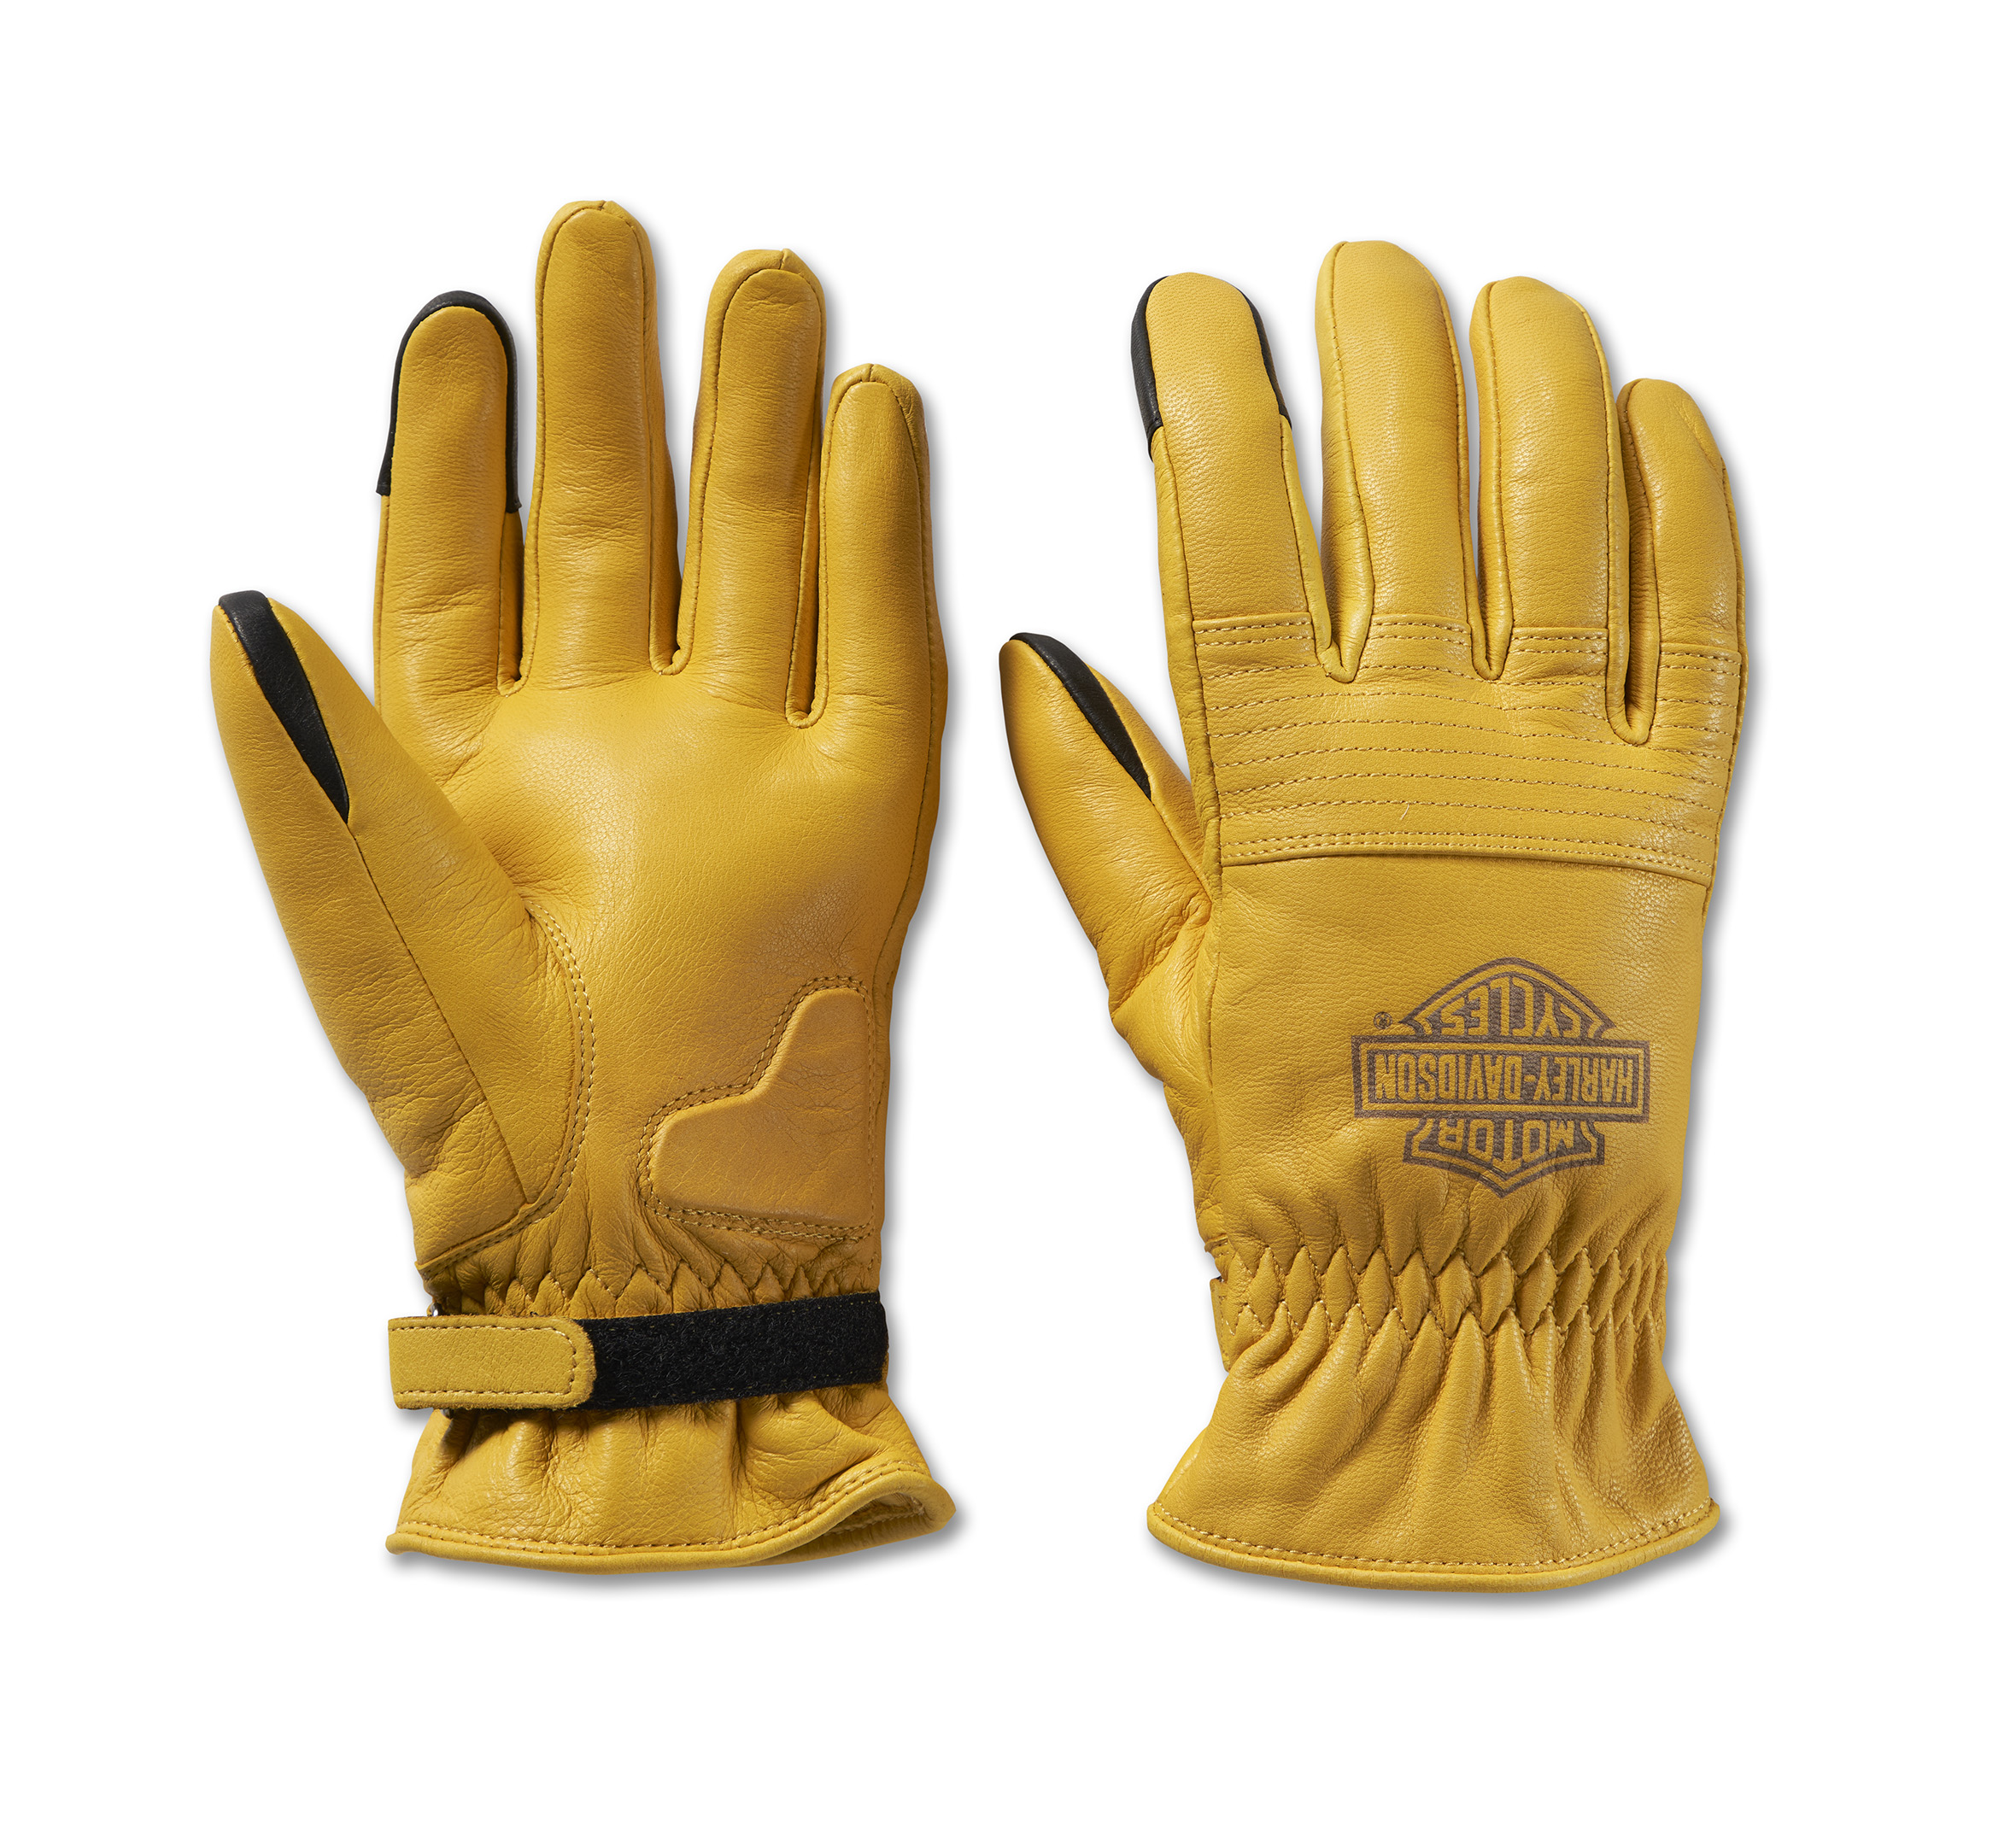 Pre-owned Gloves In Orange